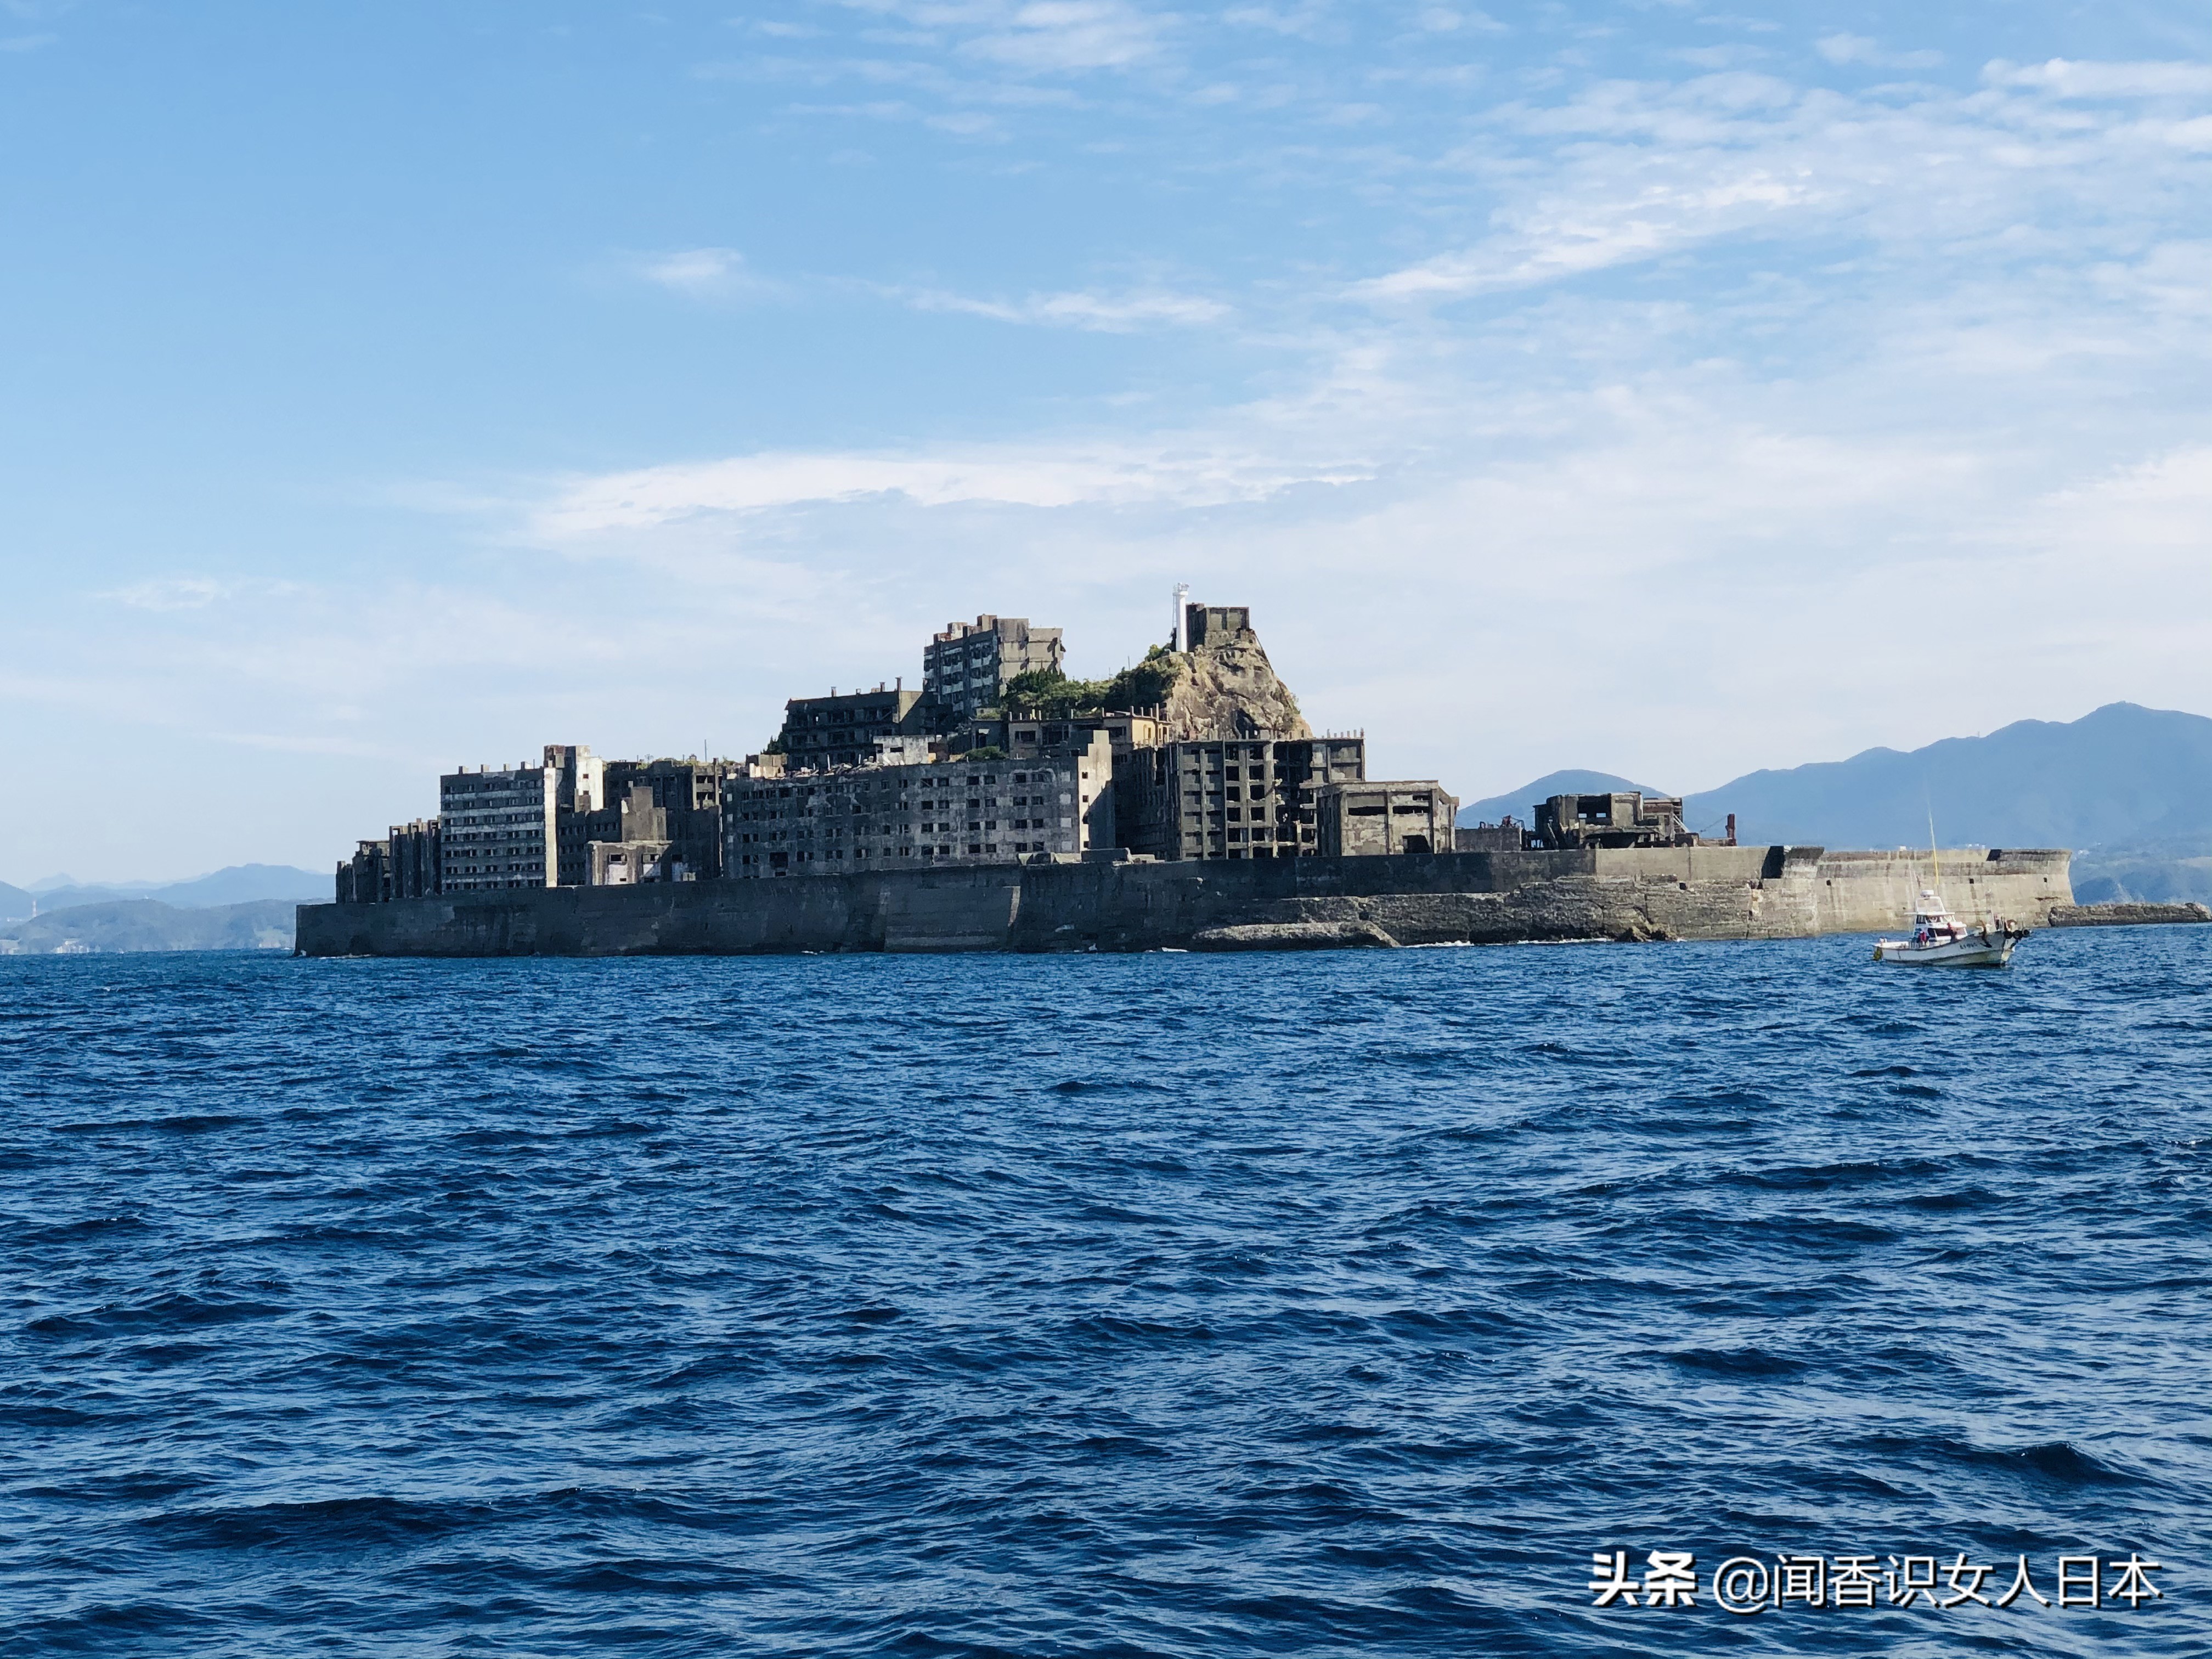 日本军舰岛,一座废弃的无人岛,现在是热门观光地,岛上